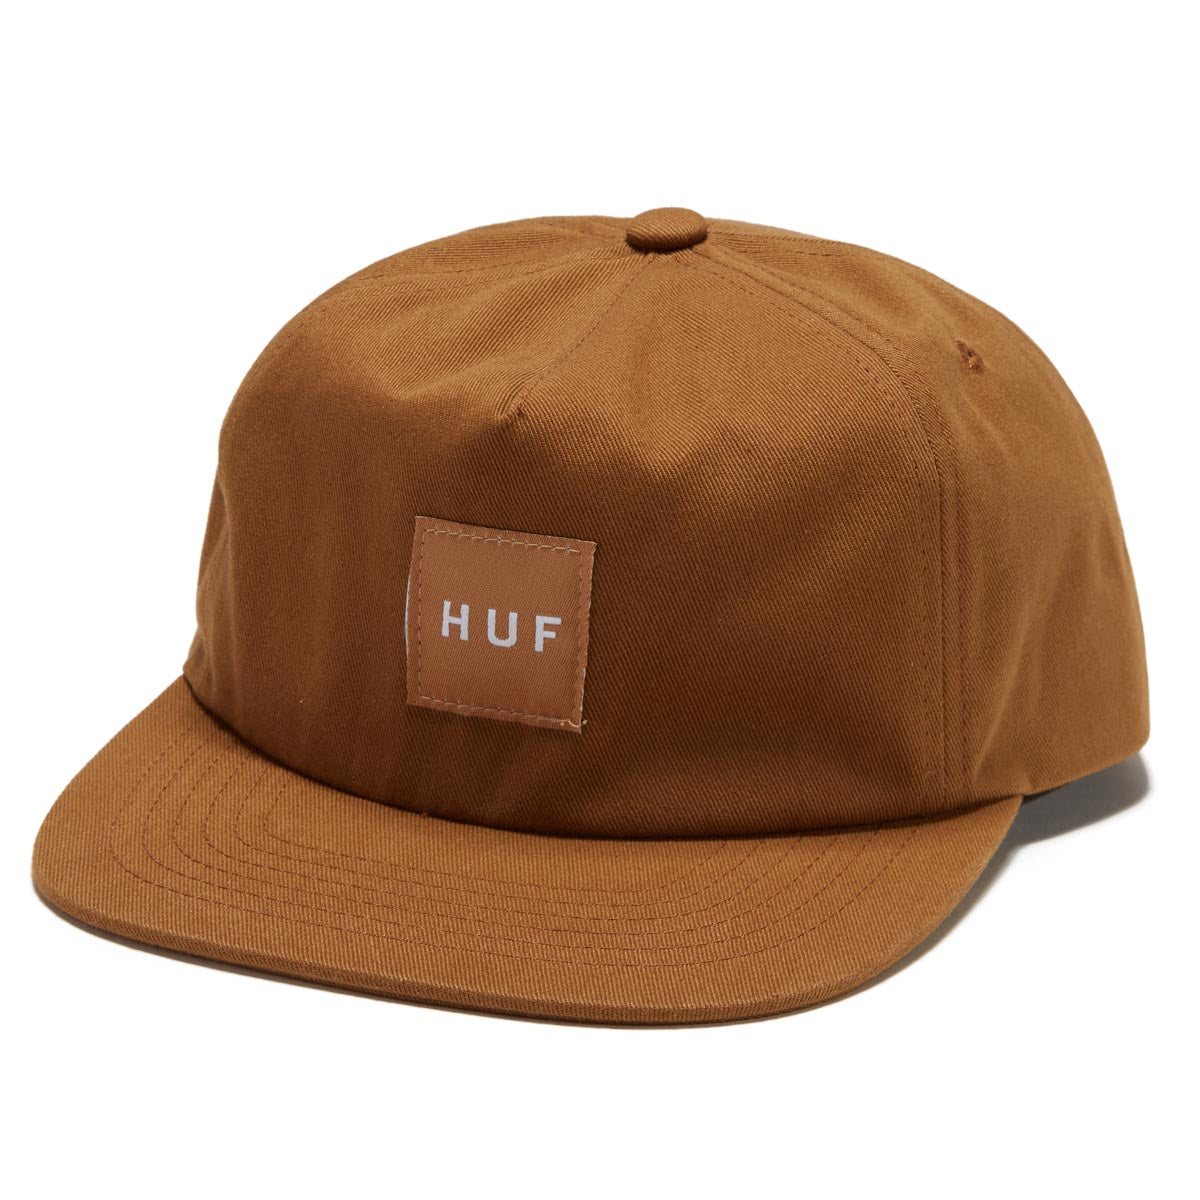 HUF Set Box Snapback Hat - Caramel image 1